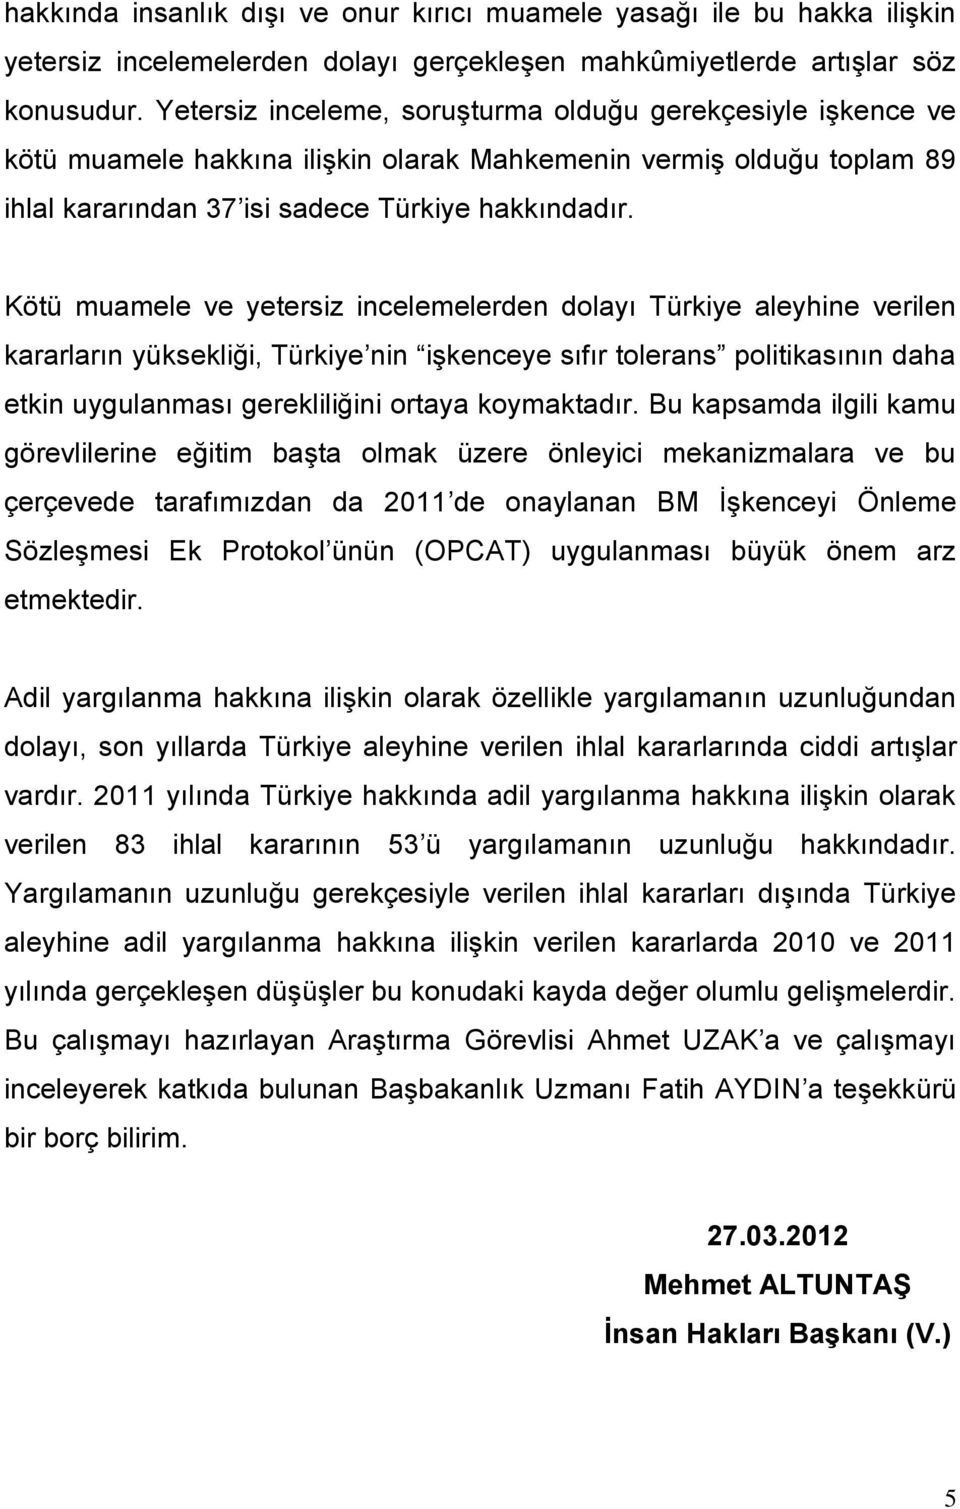 Kötü muamele ve yetersiz incelemelerden dolayı Türkiye aleyhine verilen kararların yüksekliği, Türkiye nin işkenceye sıfır tolerans politikasının daha etkin uygulanması gerekliliğini ortaya